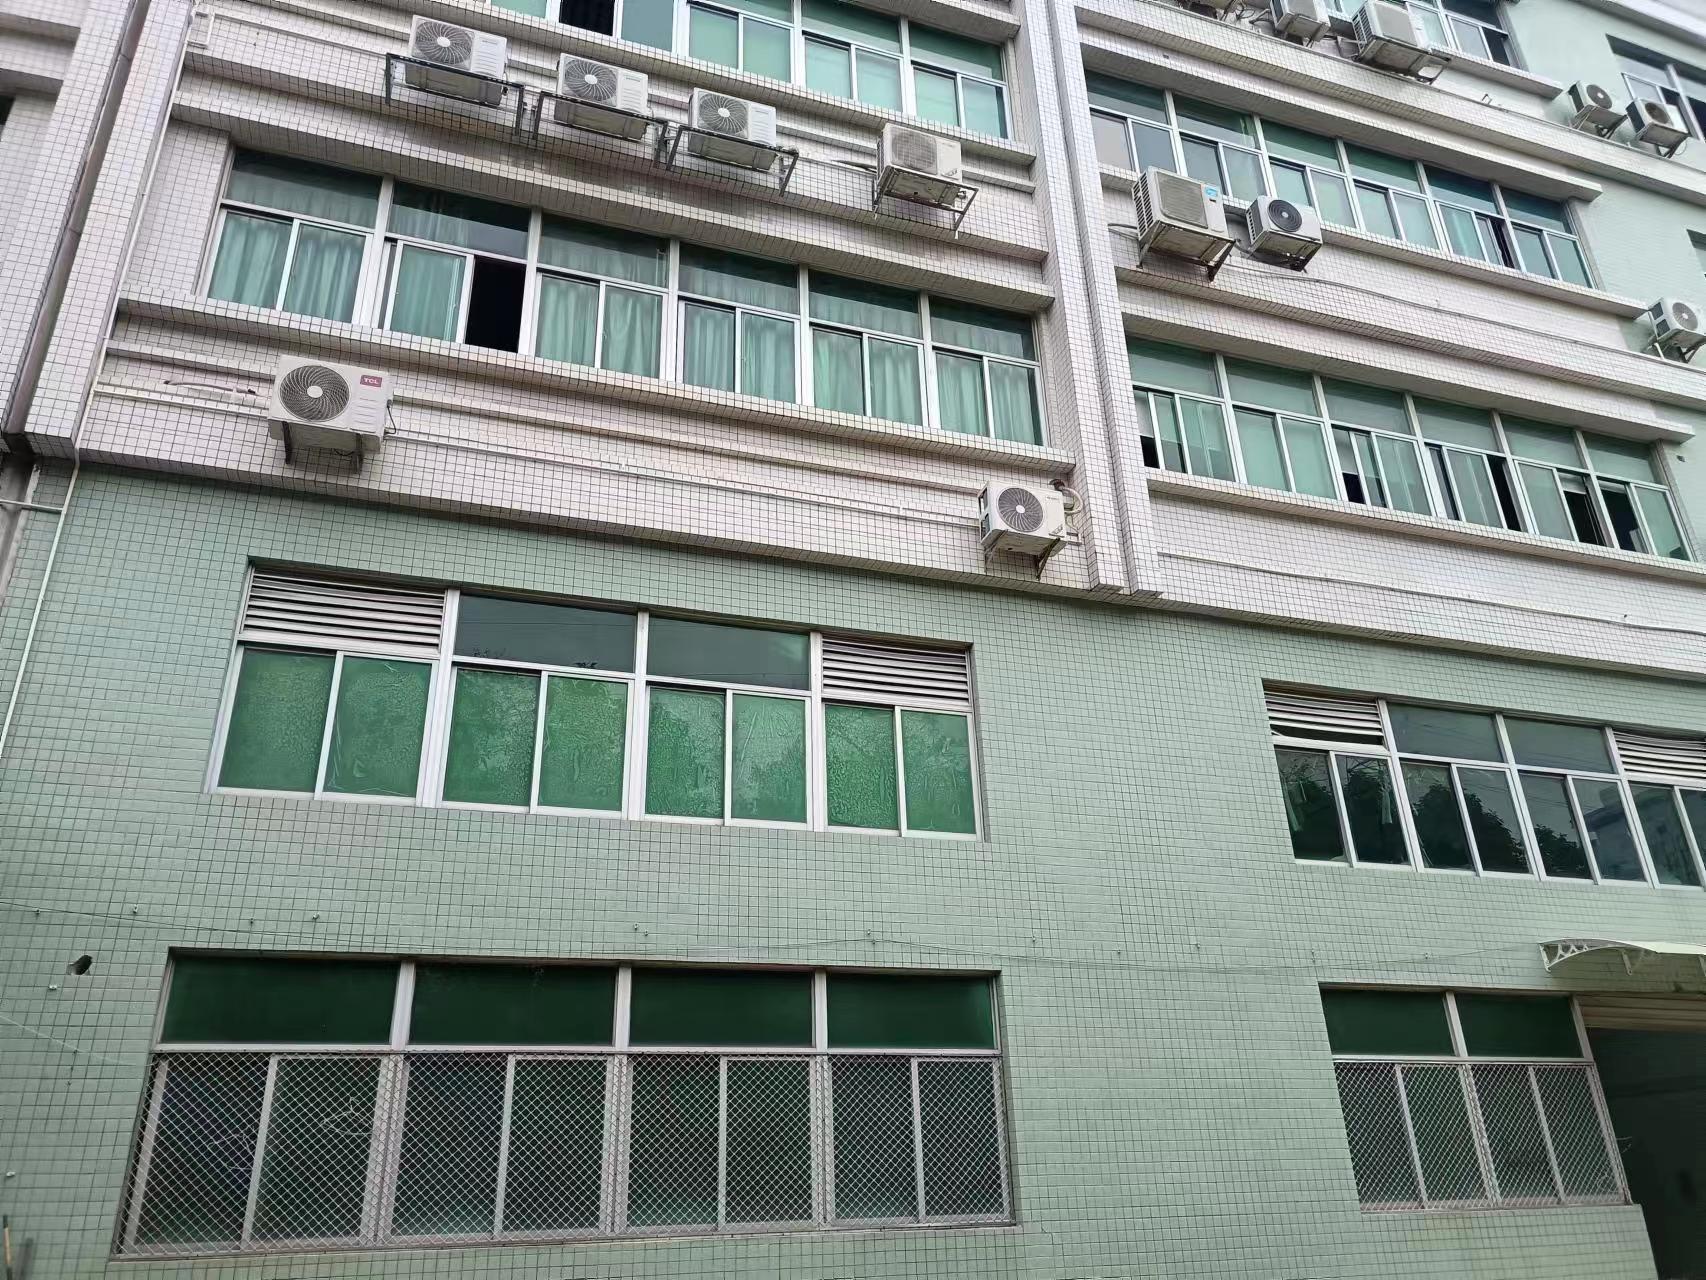 新塘镇太平洋工业区一楼1500平米厂房仓库出租